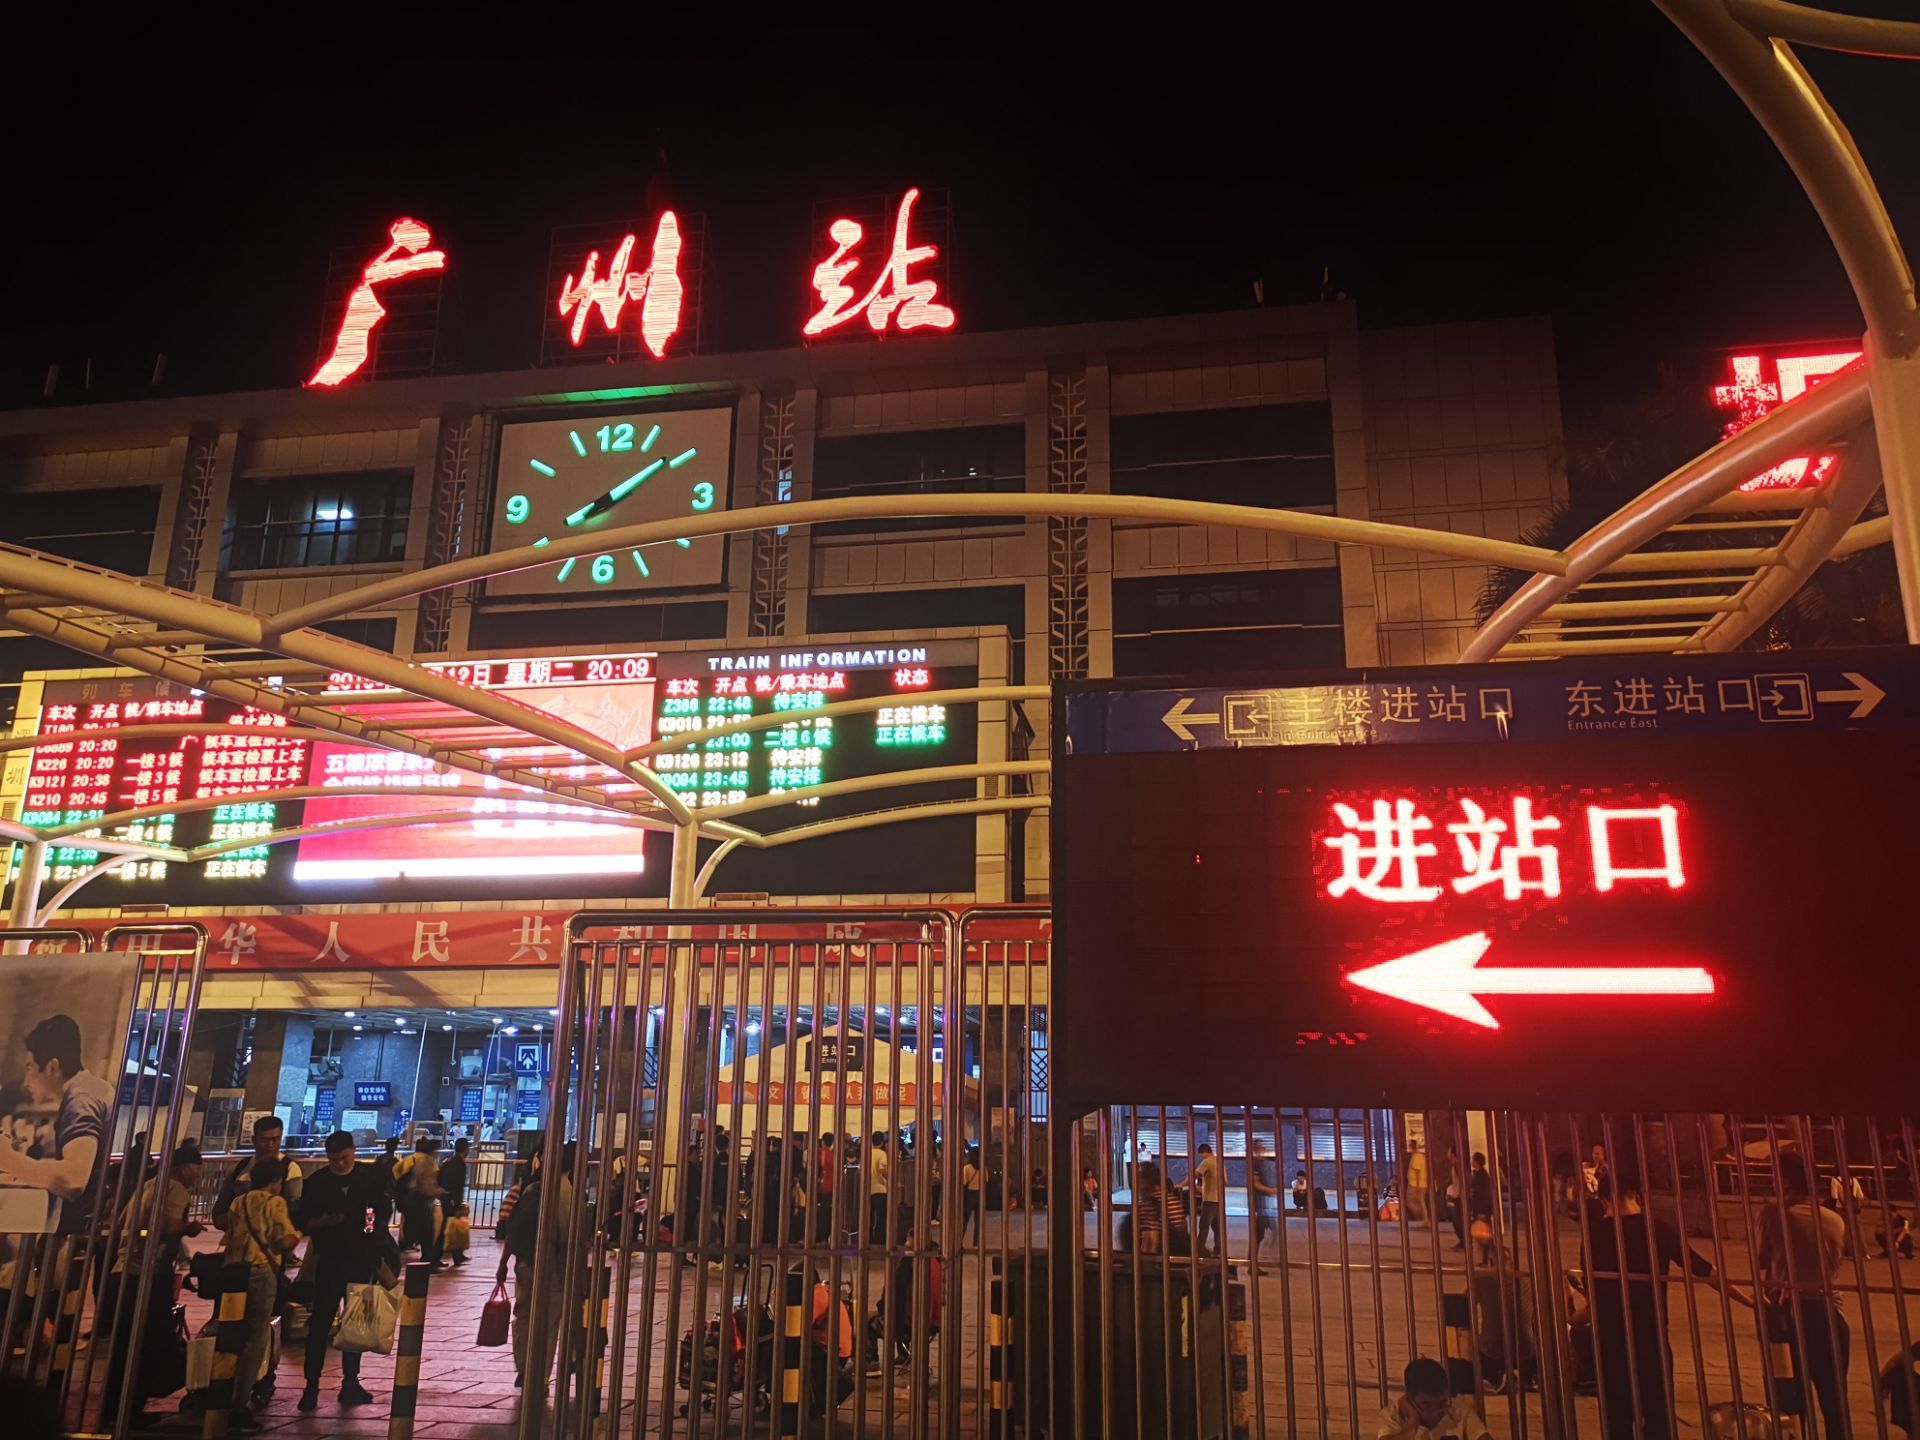 【携程攻略】广州广州站东广场购物,广州火车站以前可以说每天是人山